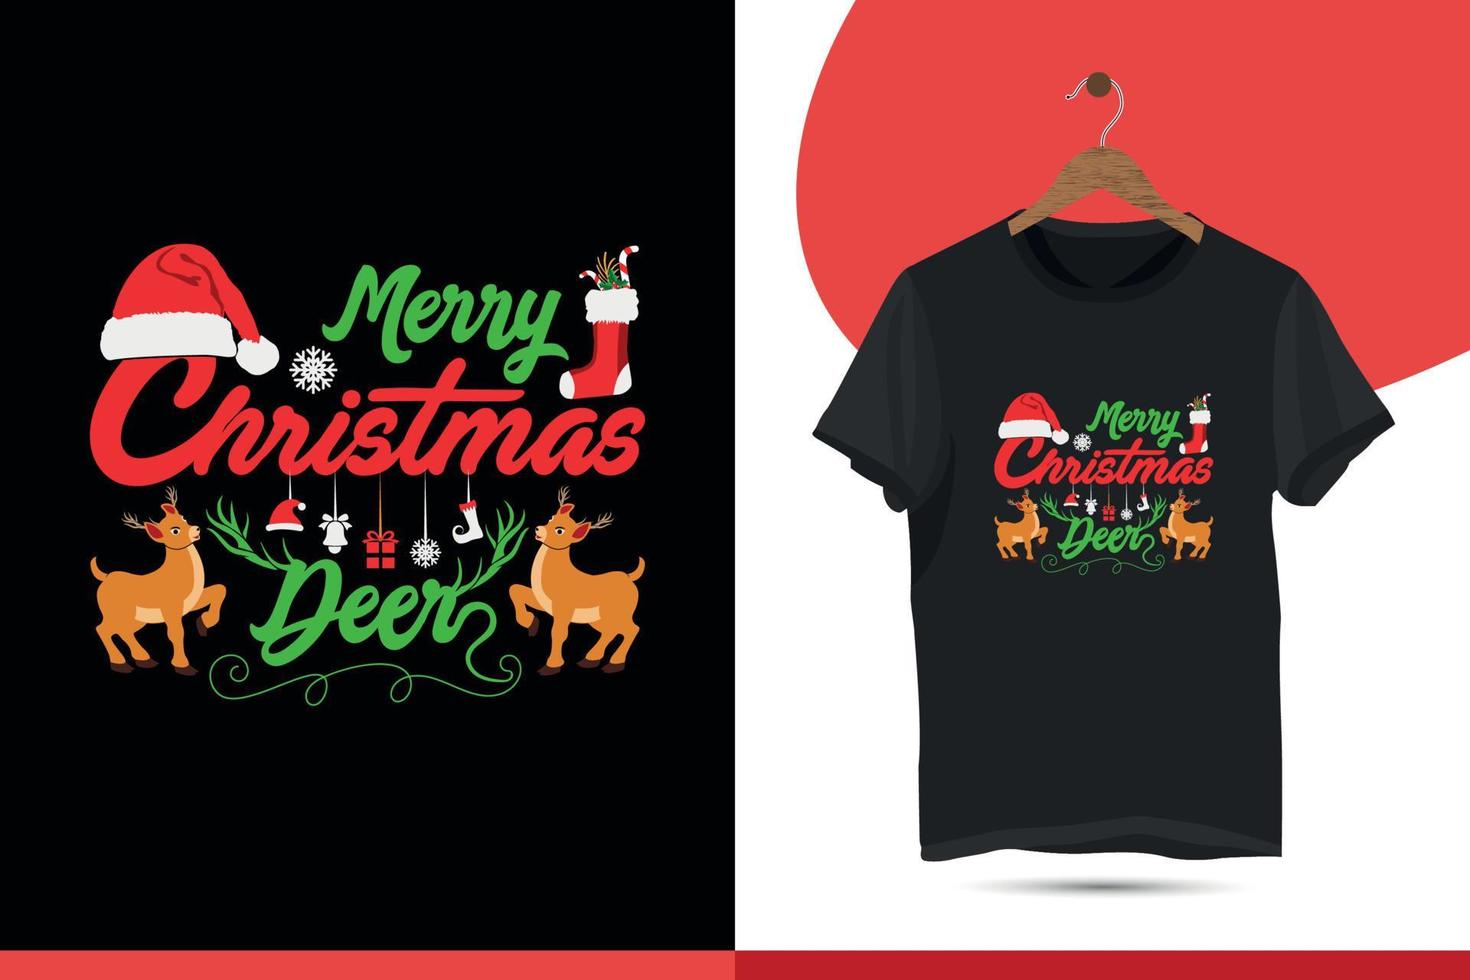 vrolijk Kerstmis grafisch prints set, t-shirt ontwerpen voor lelijk trui Kerstmis feest. vakantie decor met Kerstmis boom, de kerstman, peperkoek teksten, en ornamenten. vector